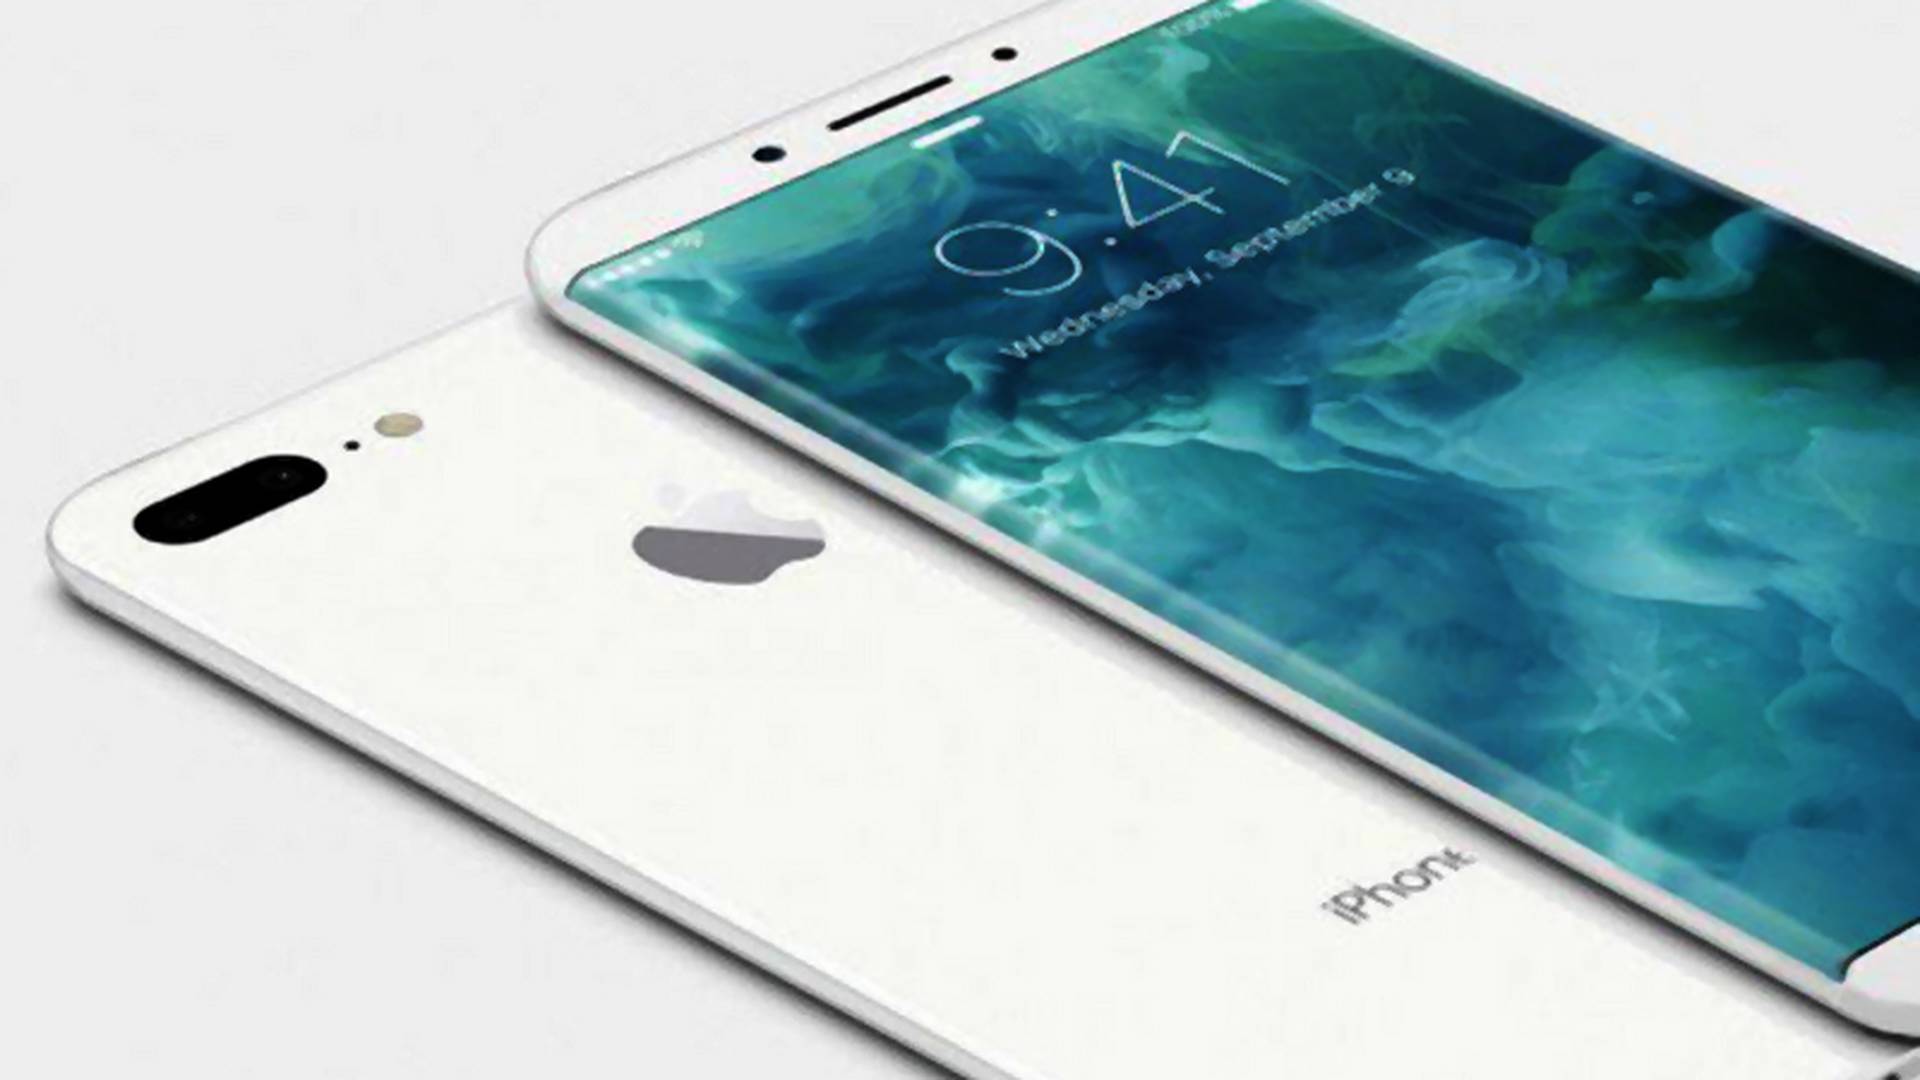 Według plotek nowy iPhone będzie duży, mały, aluminiowy i szklany jednocześnie. Co wiemy na pewno?